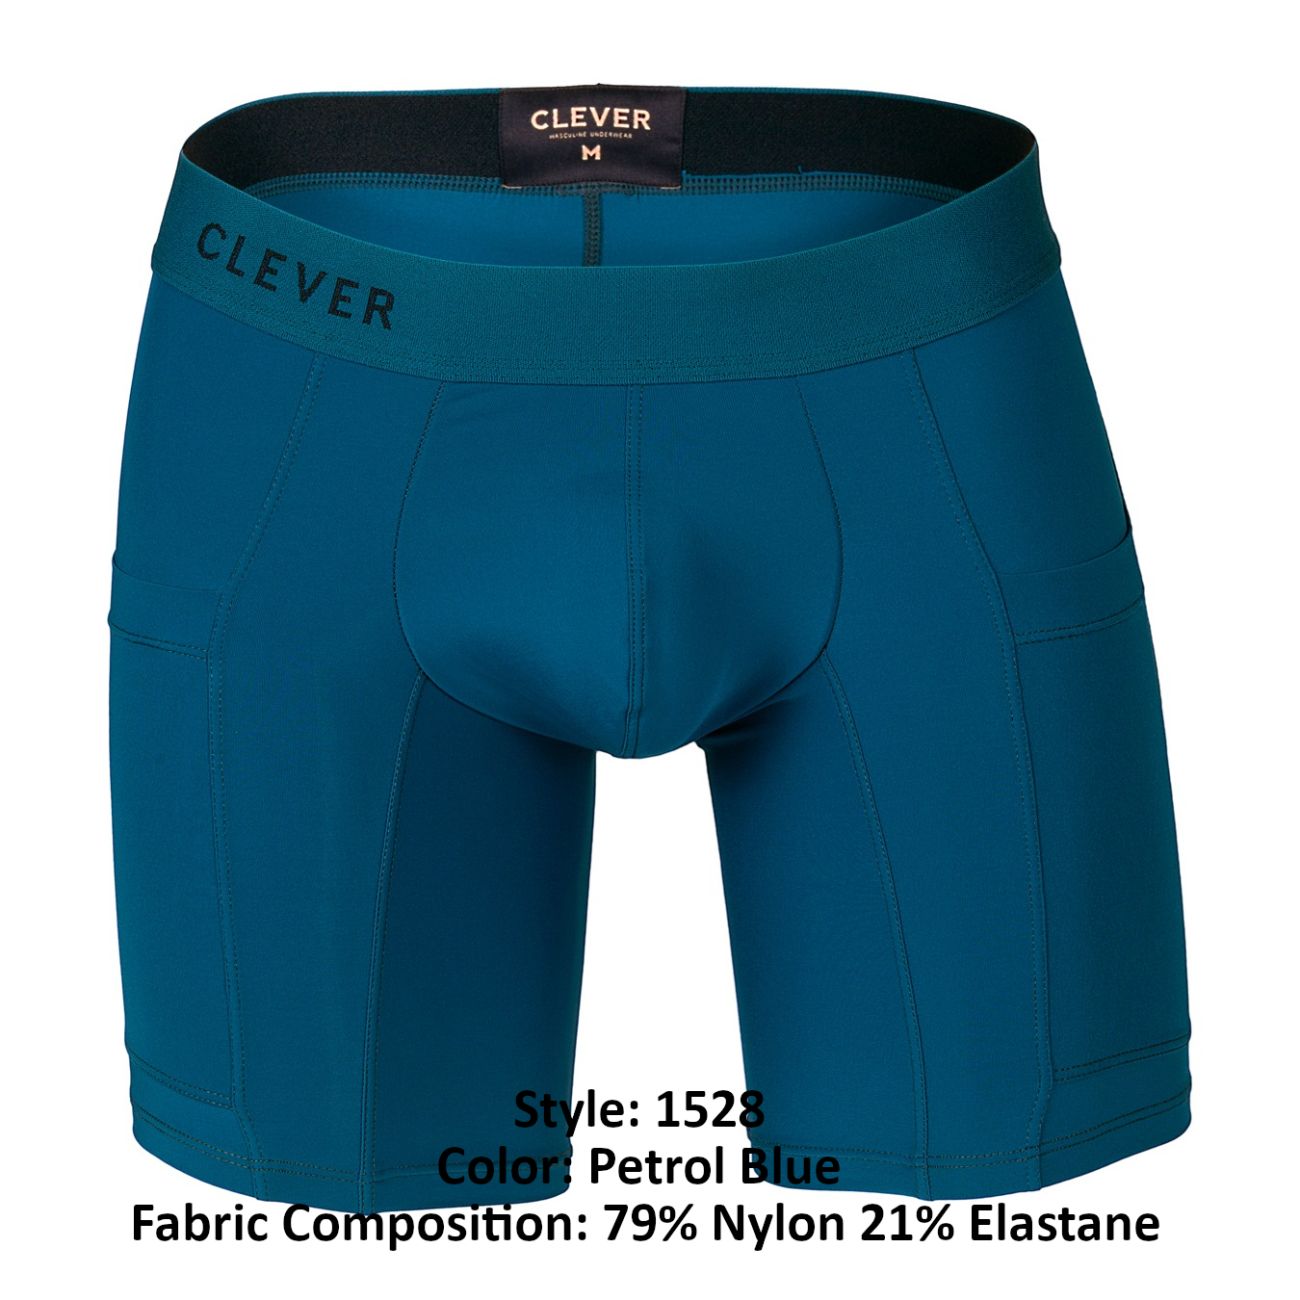 Clever 1528 Arctic Boxer Briefs Petrol Blue